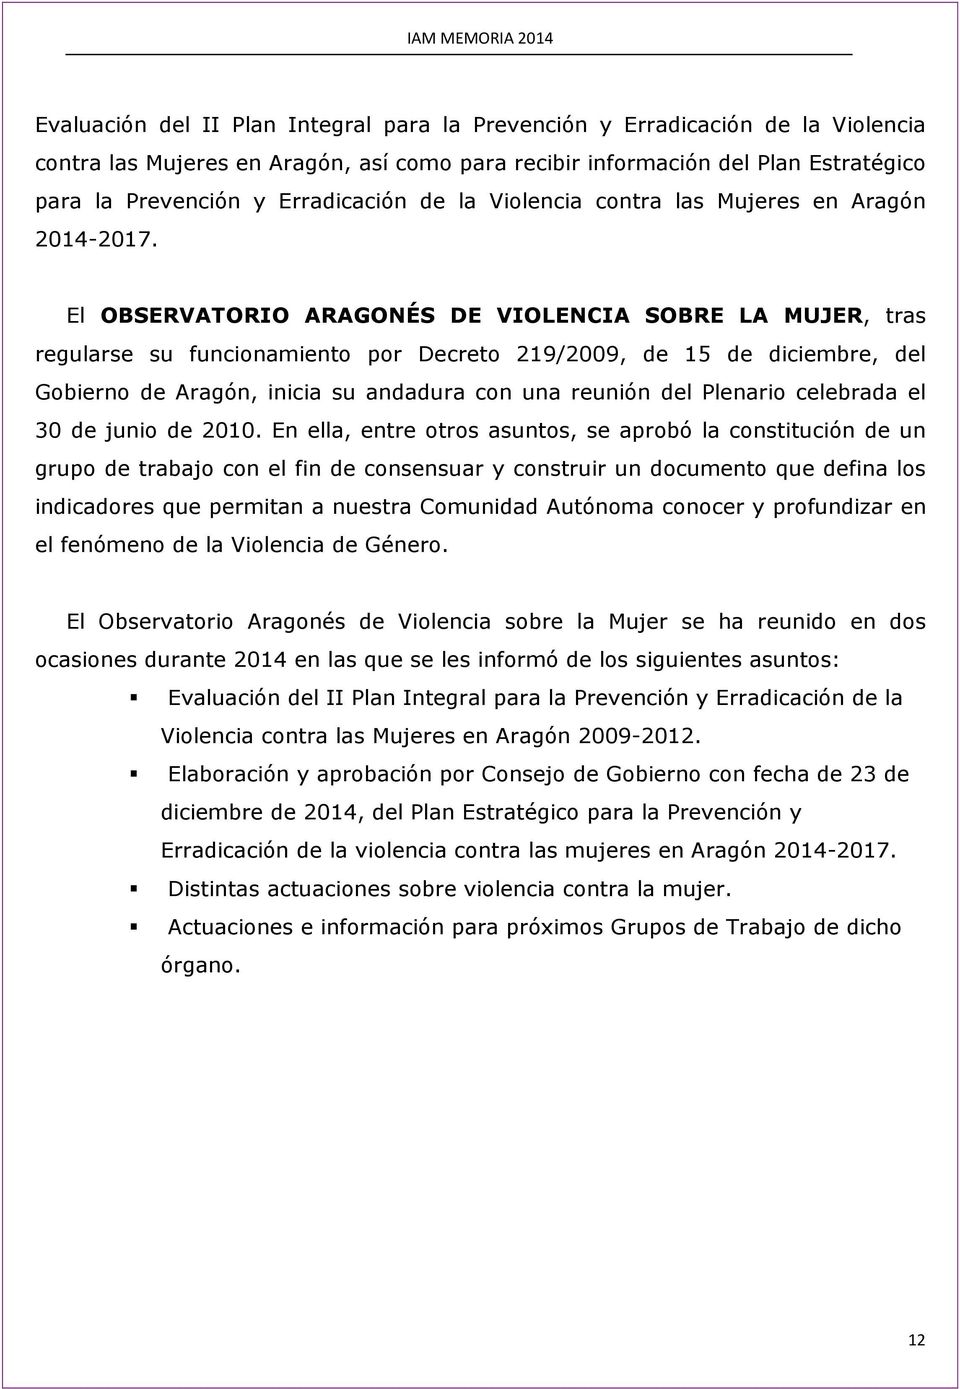 El OBSERVATORIO ARAGONÉS DE VIOLENCIA SOBRE LA MUJER, tras regularse su funcionamiento por Decreto 219/2009, de 15 de diciembre, del Gobierno de Aragón, inicia su andadura con una reunión del